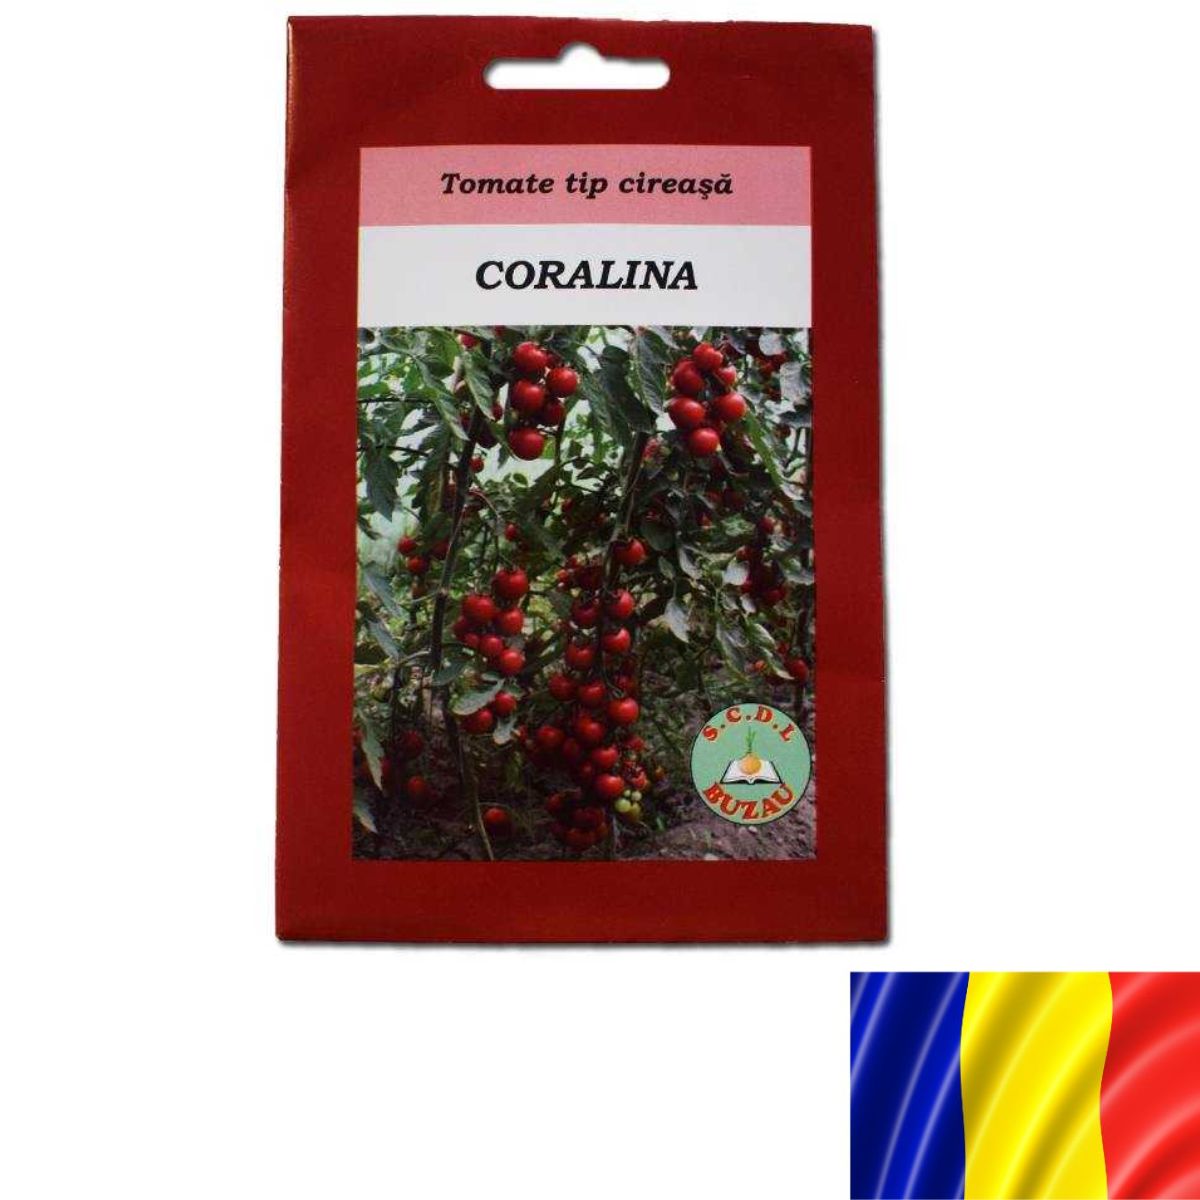 Tomate - Seminte de tomate cherry romanesti CORALINA, 2 grame, SCDL, hectarul.ro